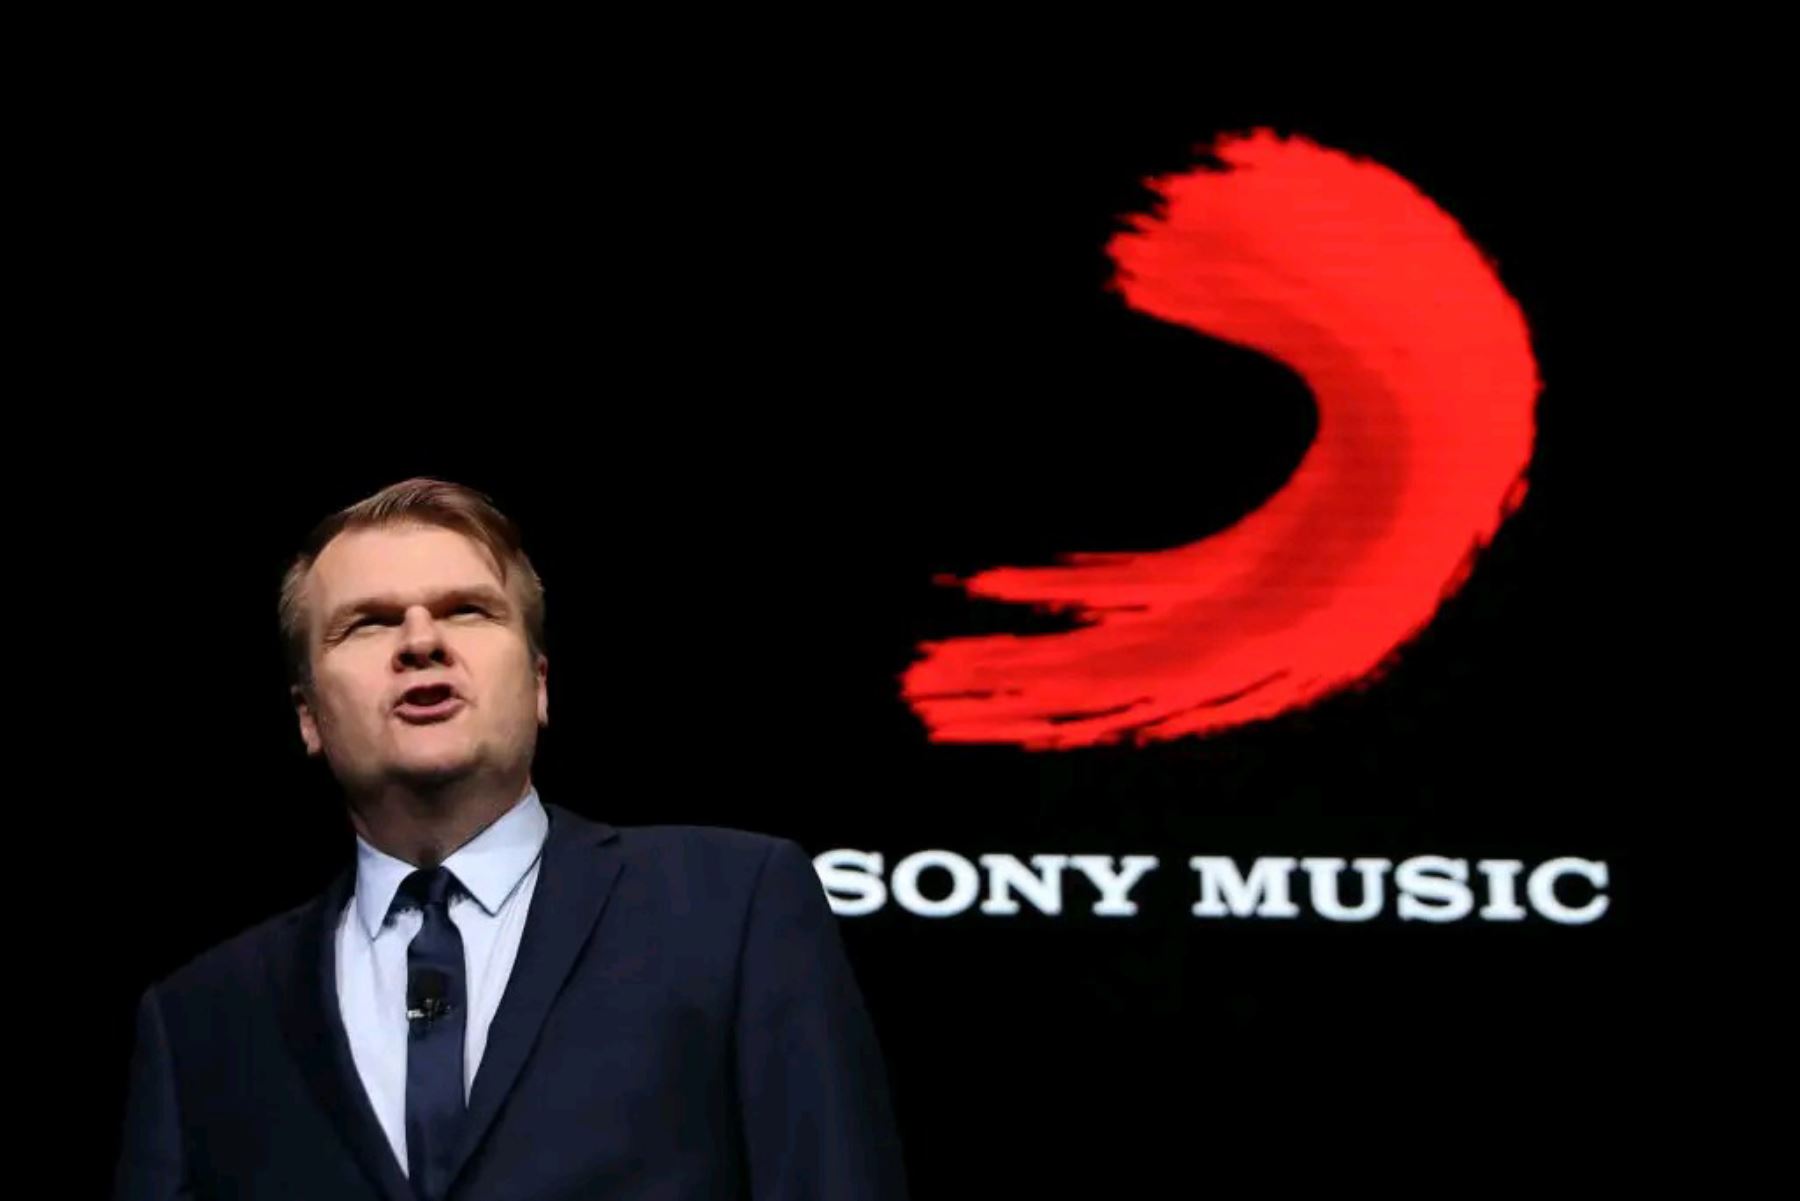 Sony Music creó fondo de ayuda por el COVID-19, el cual fue dado a conocer por Rob Stringer, Chairman de Sony Music Grou.